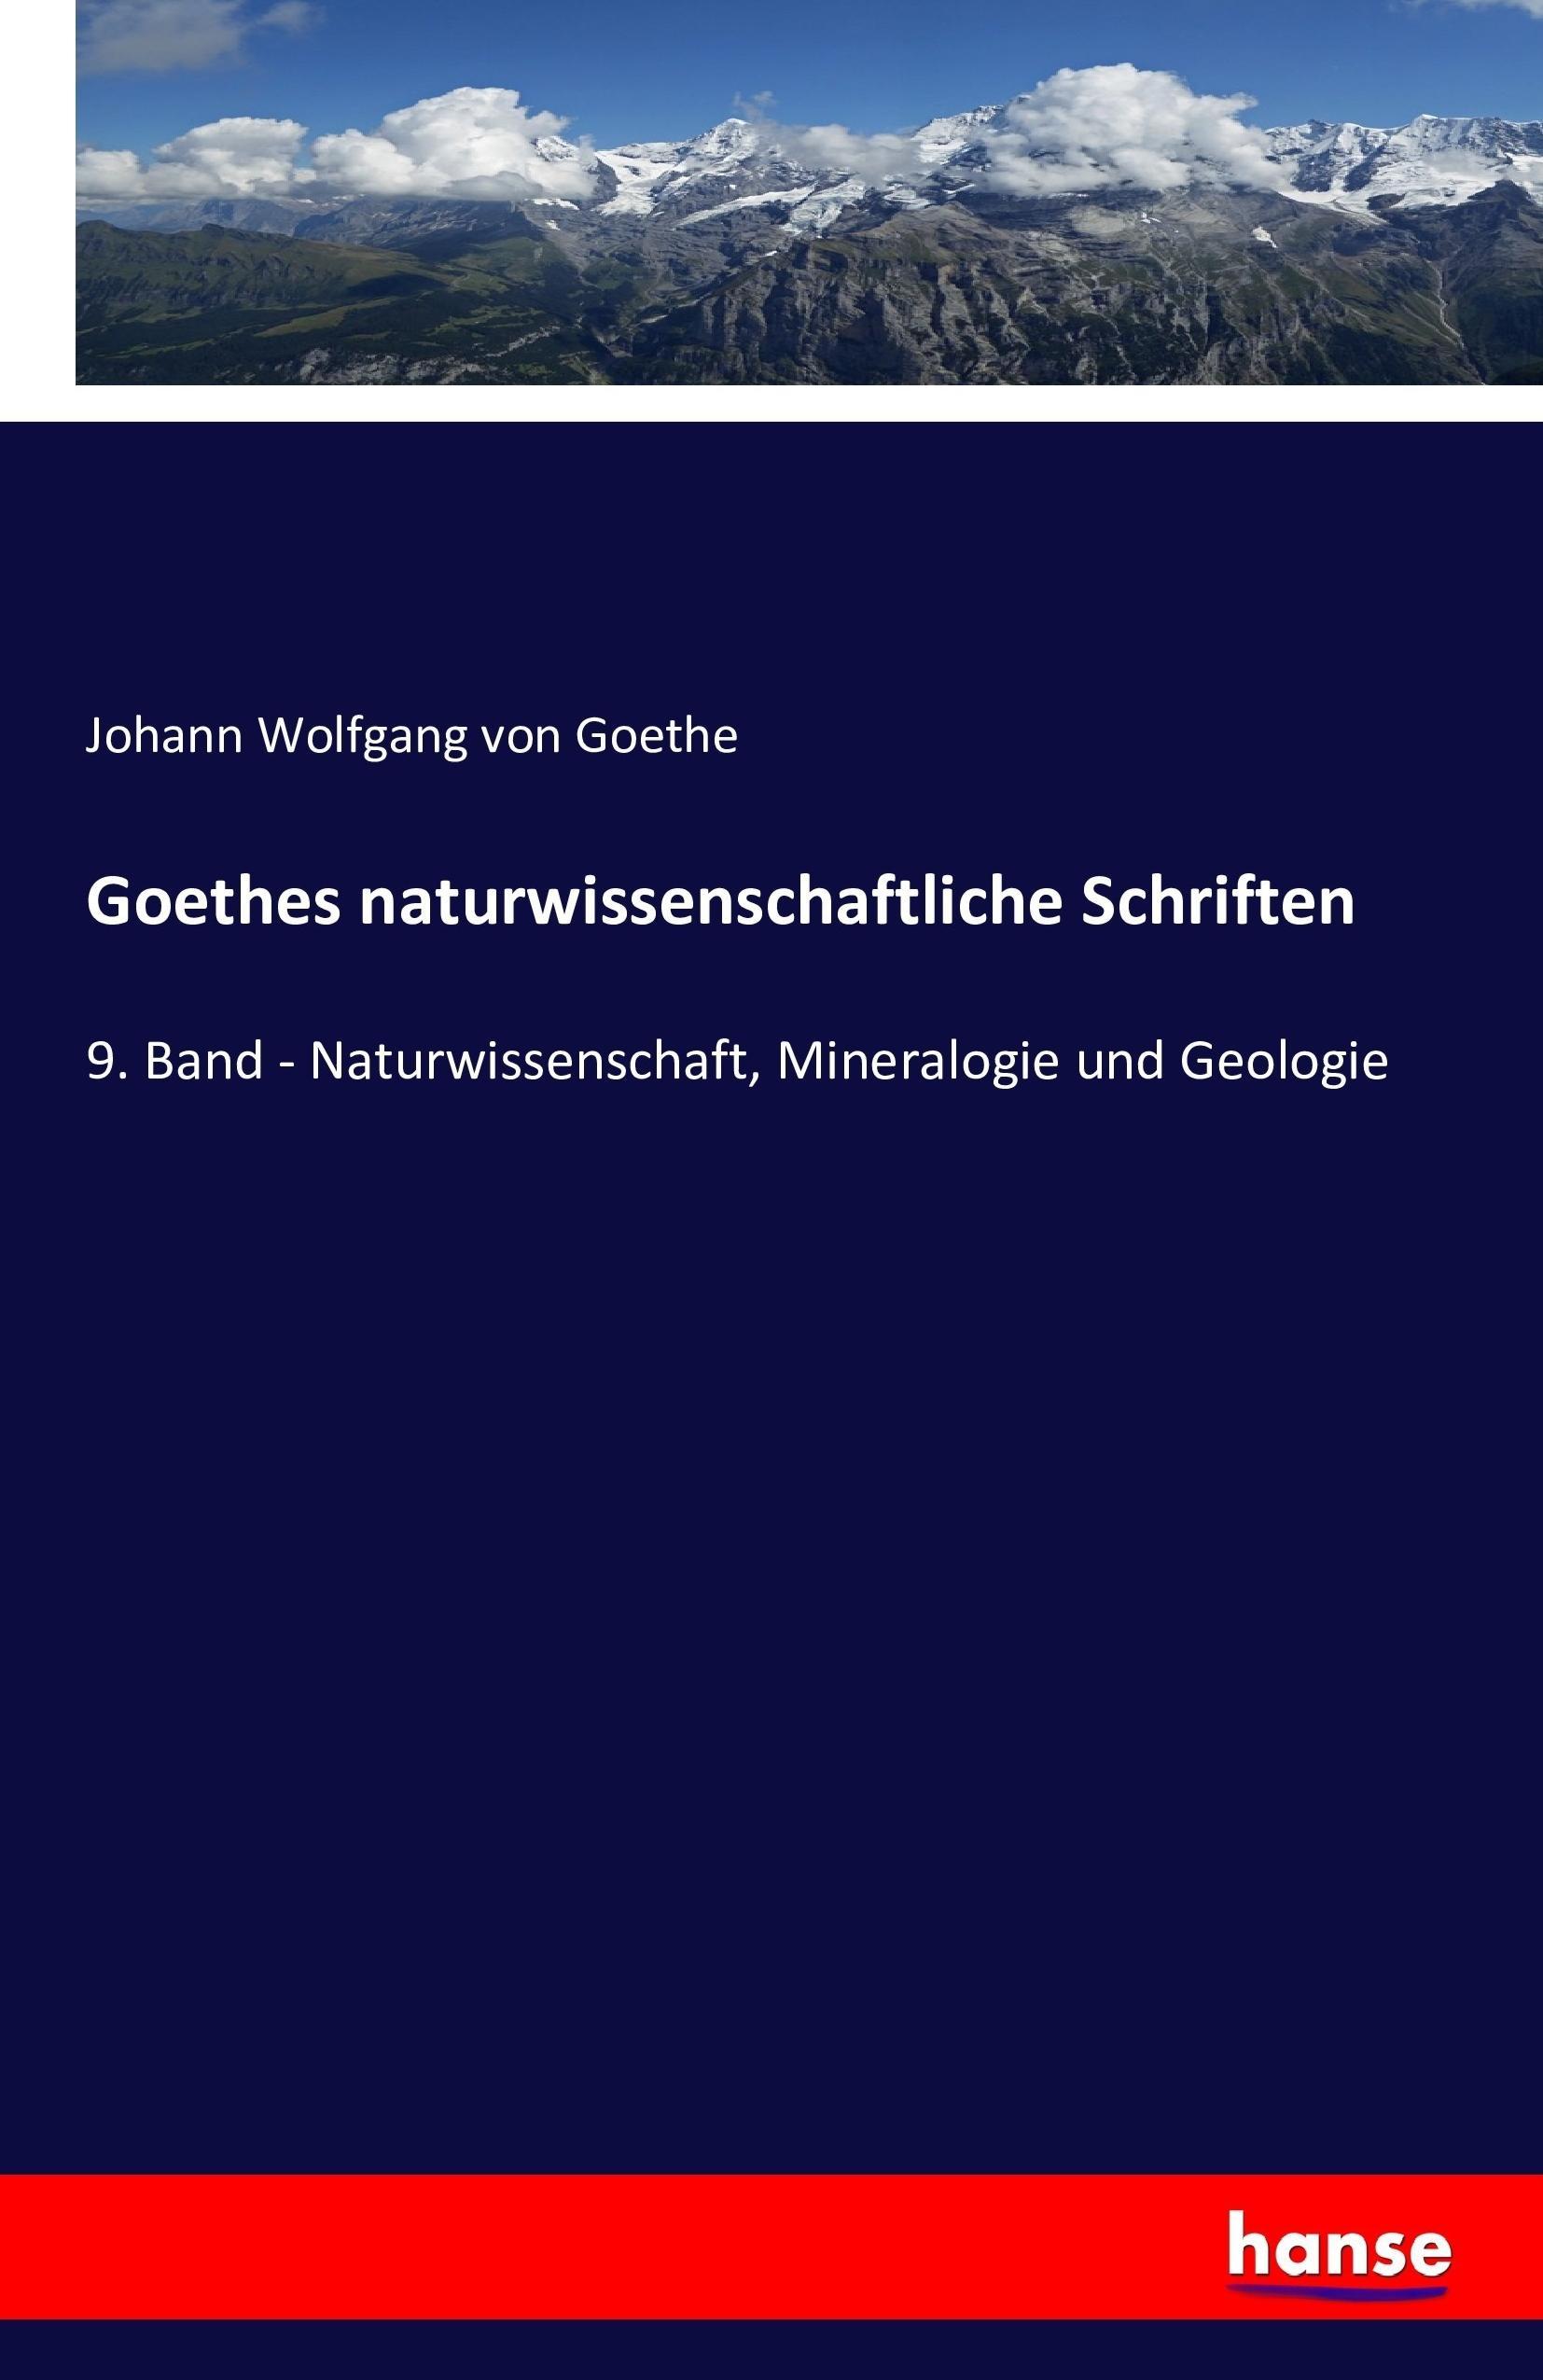 Goethes naturwissenschaftliche Schriften - Goethe, Johann Wolfgang von